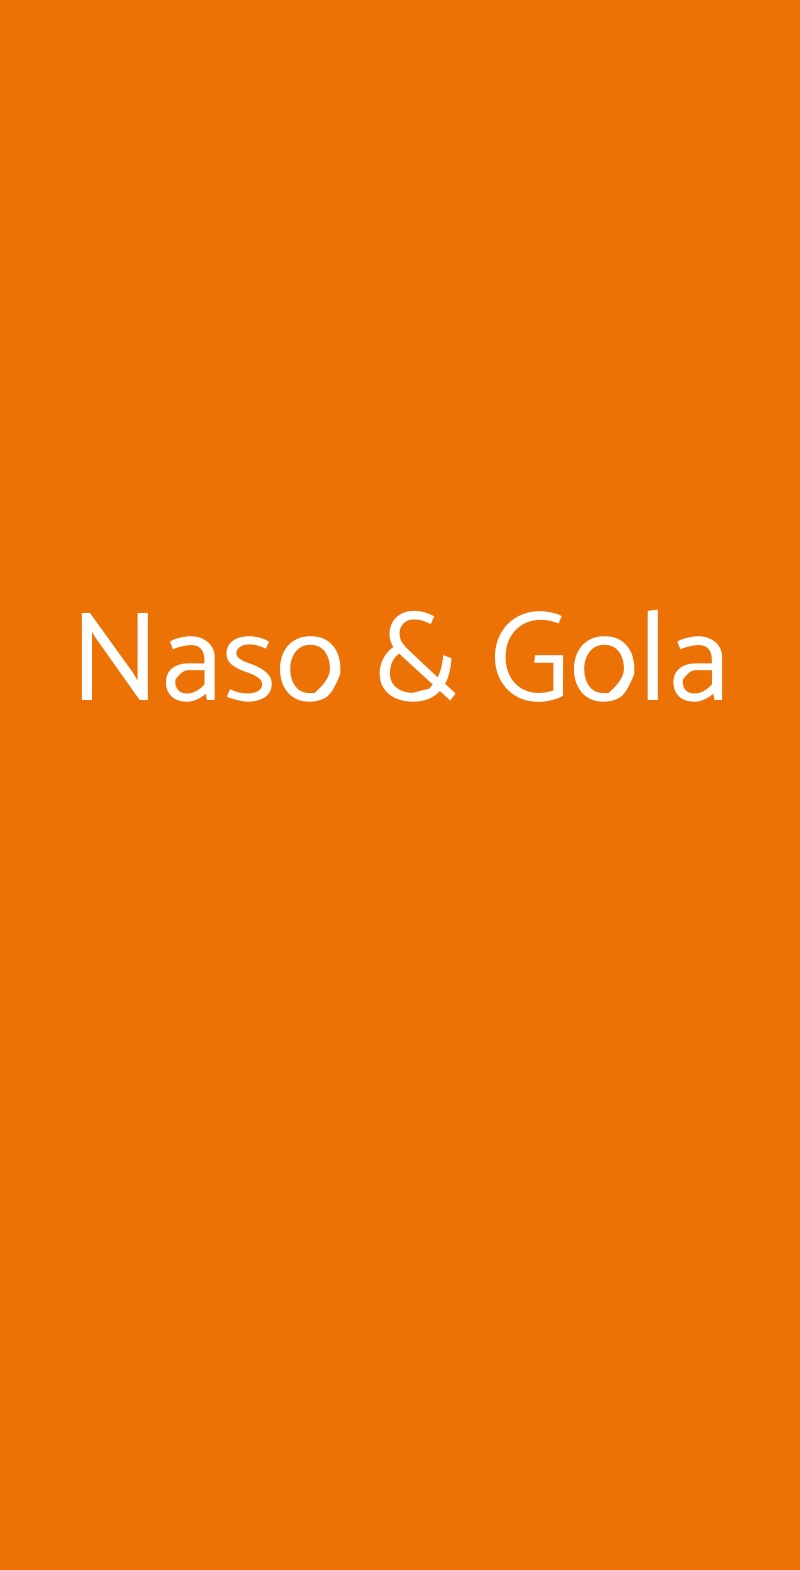 Naso & Gola Alice Bel Colle menù 1 pagina